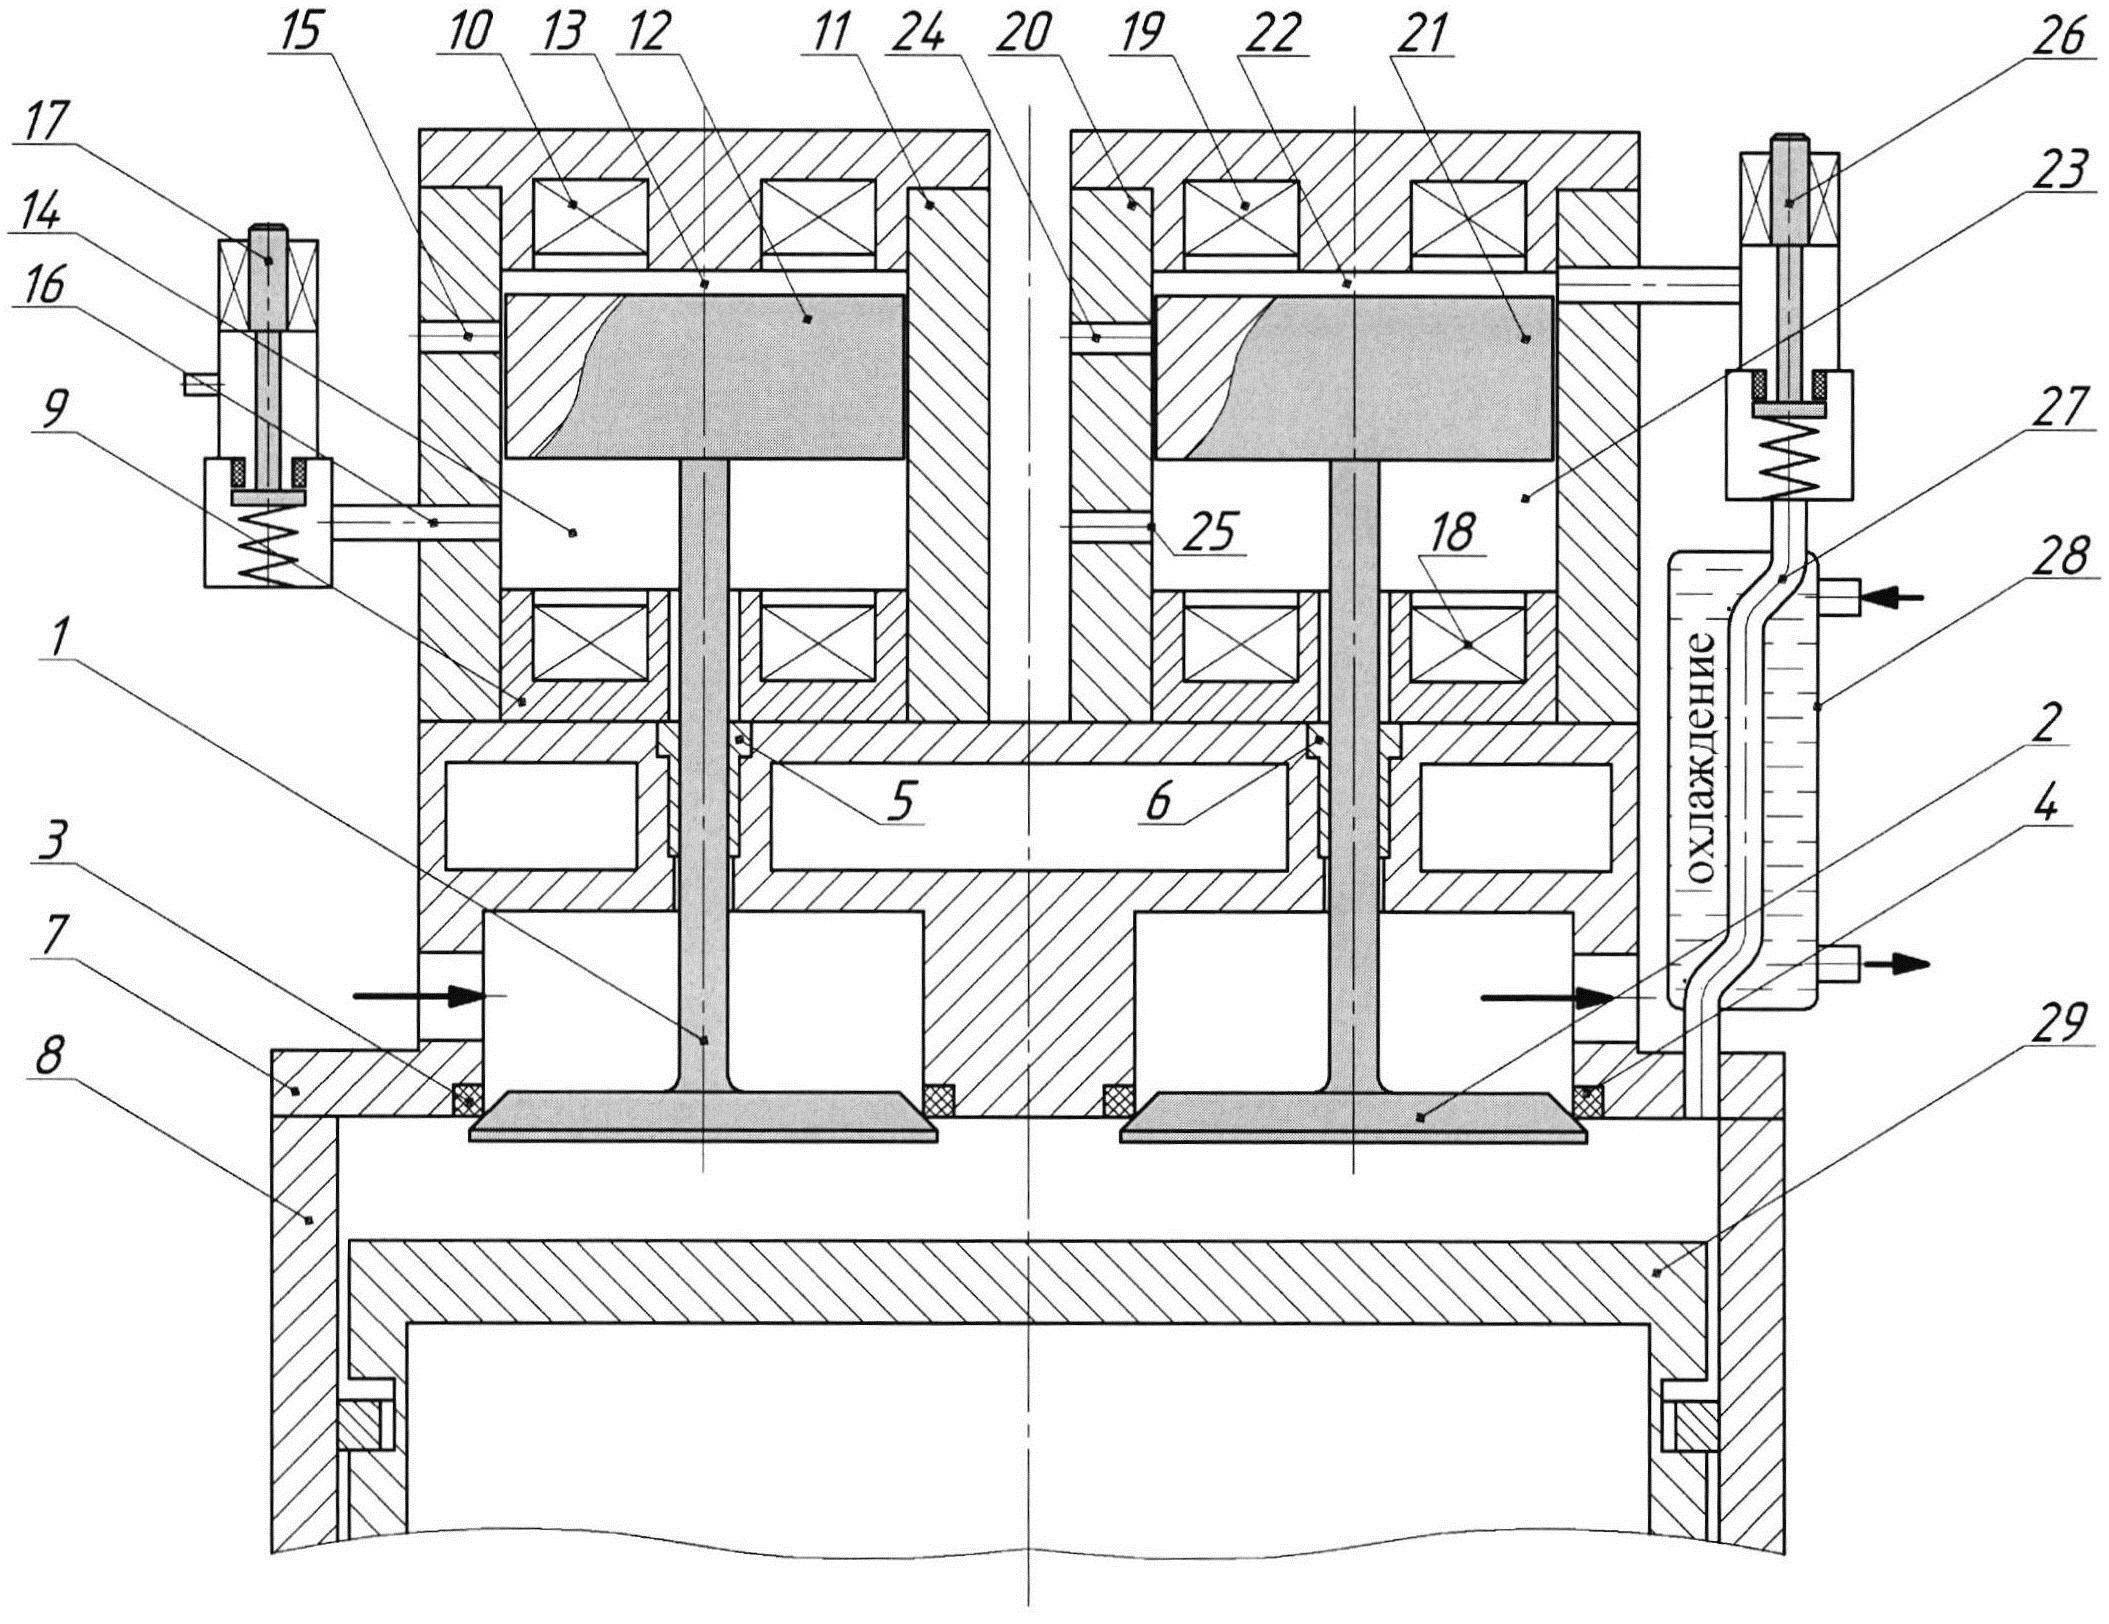 Механизм газораспределения поршневого двигателя внутреннего сгорания